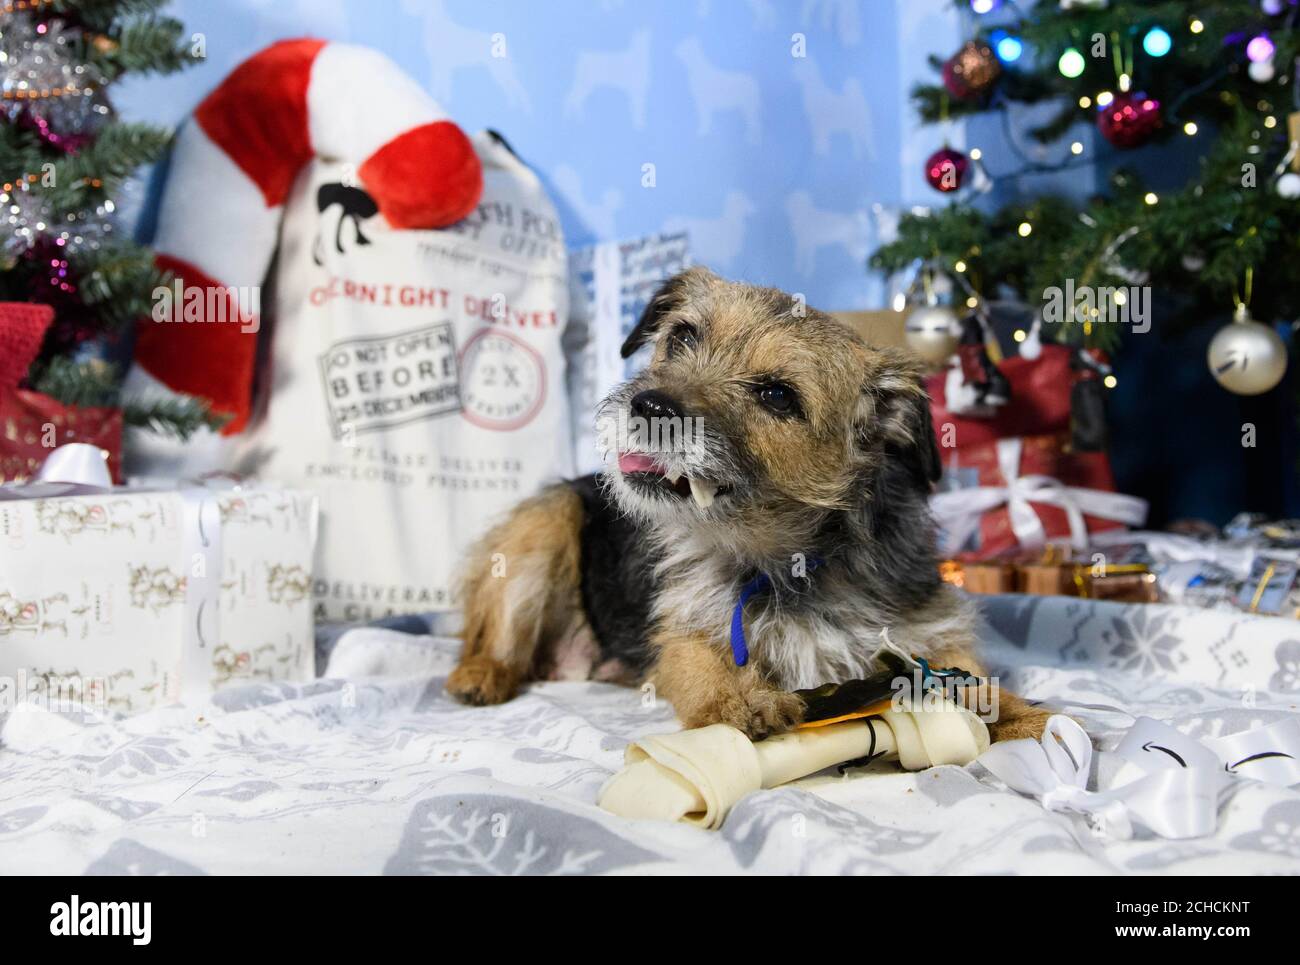 Vendite di cani immagini e fotografie stock ad alta risoluzione - Alamy